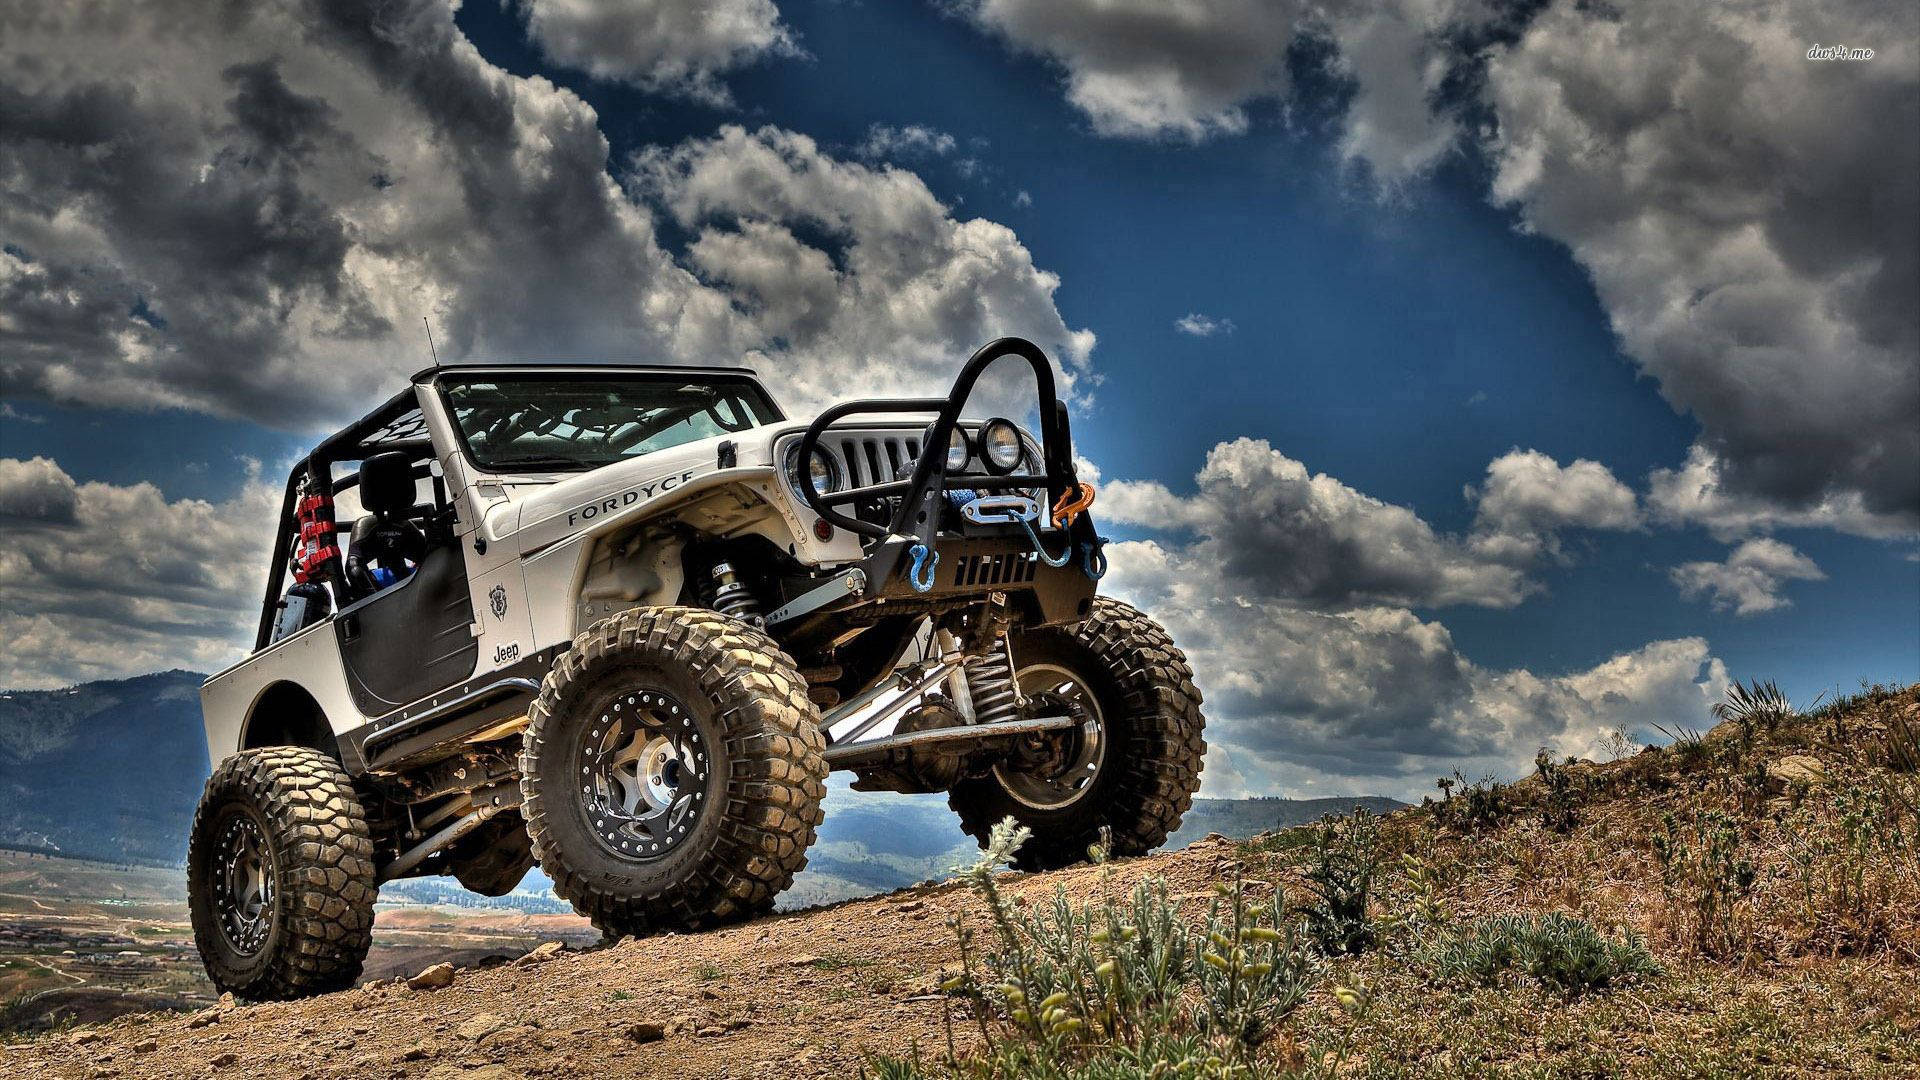 Vk 994 Jeep Background